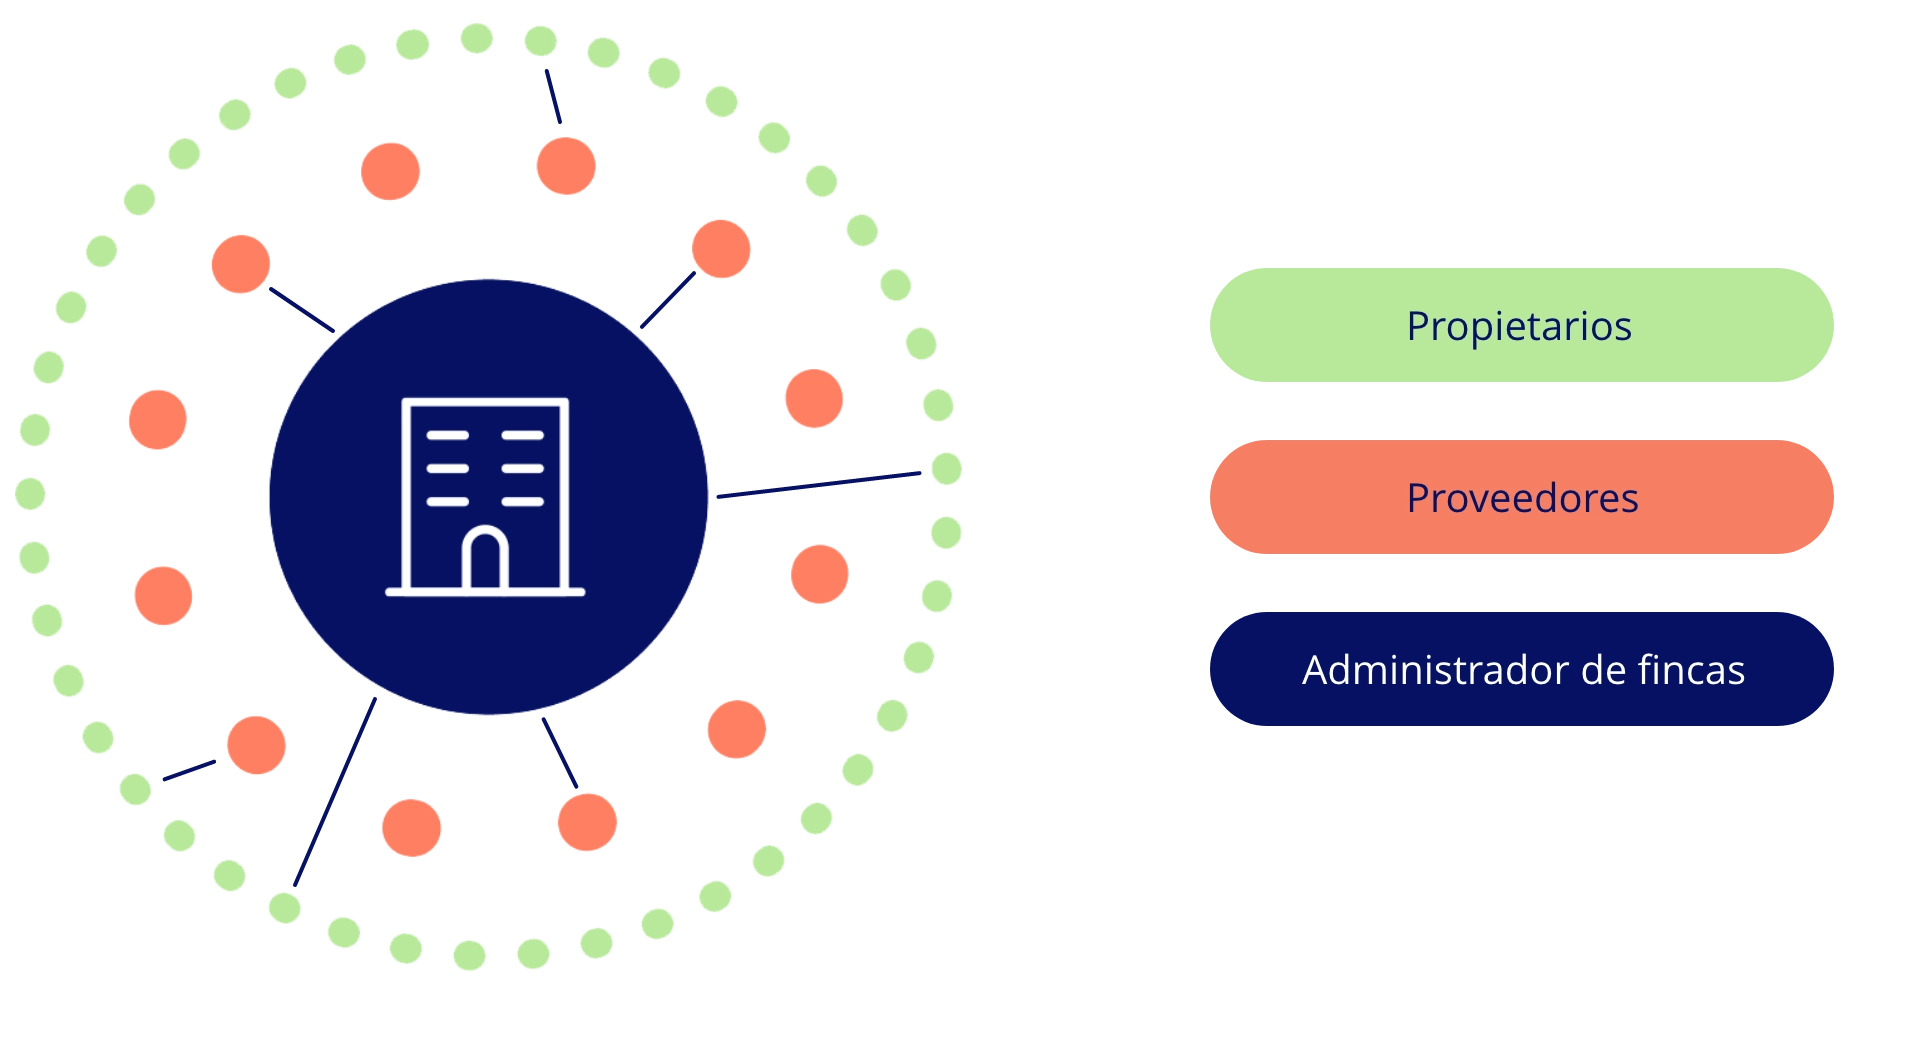 Ilustracion del ecosistema propietarios, proveedores y administradores